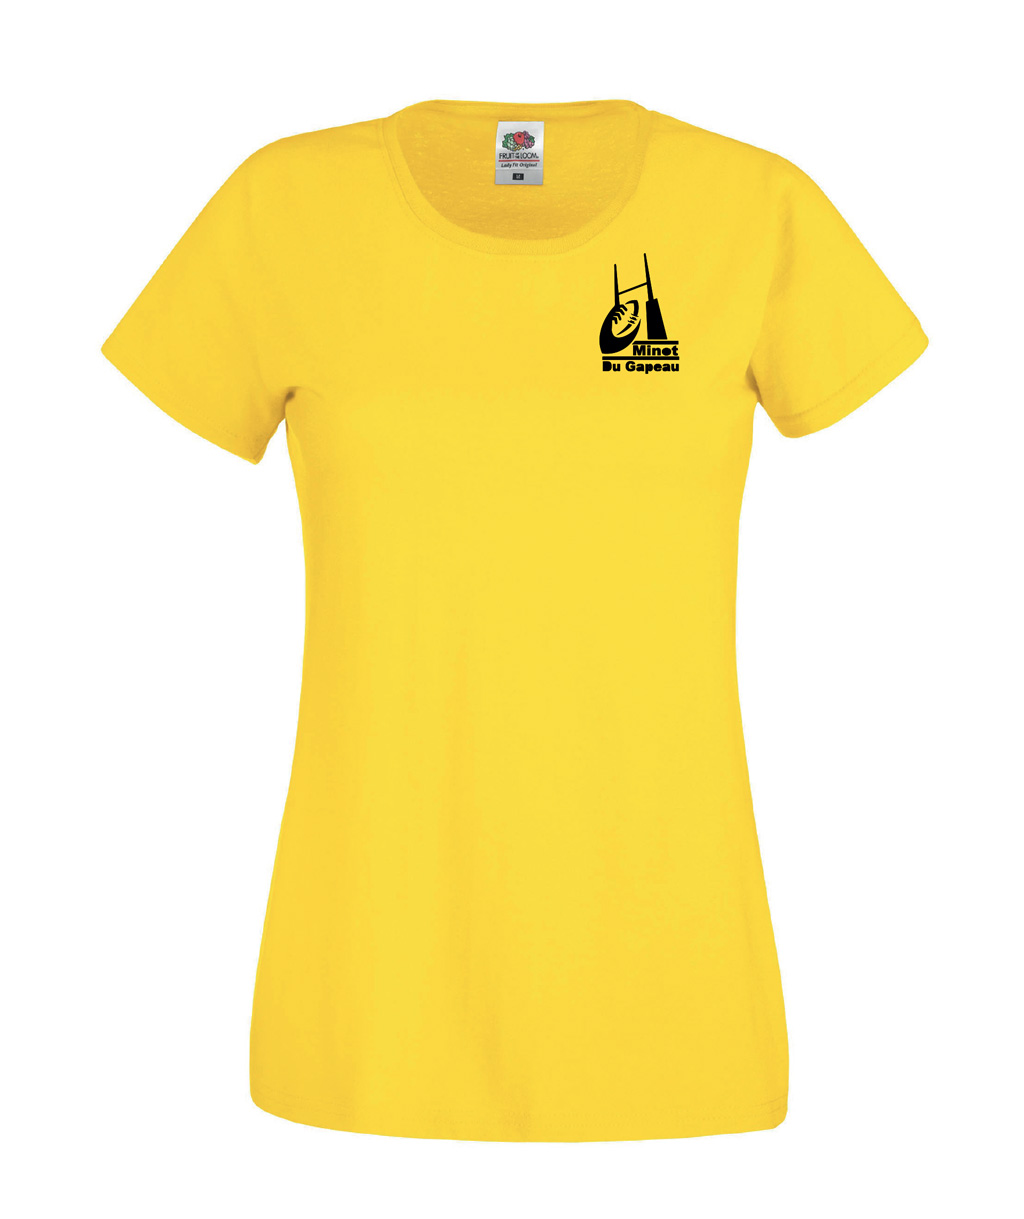 t-shirt femme jaune